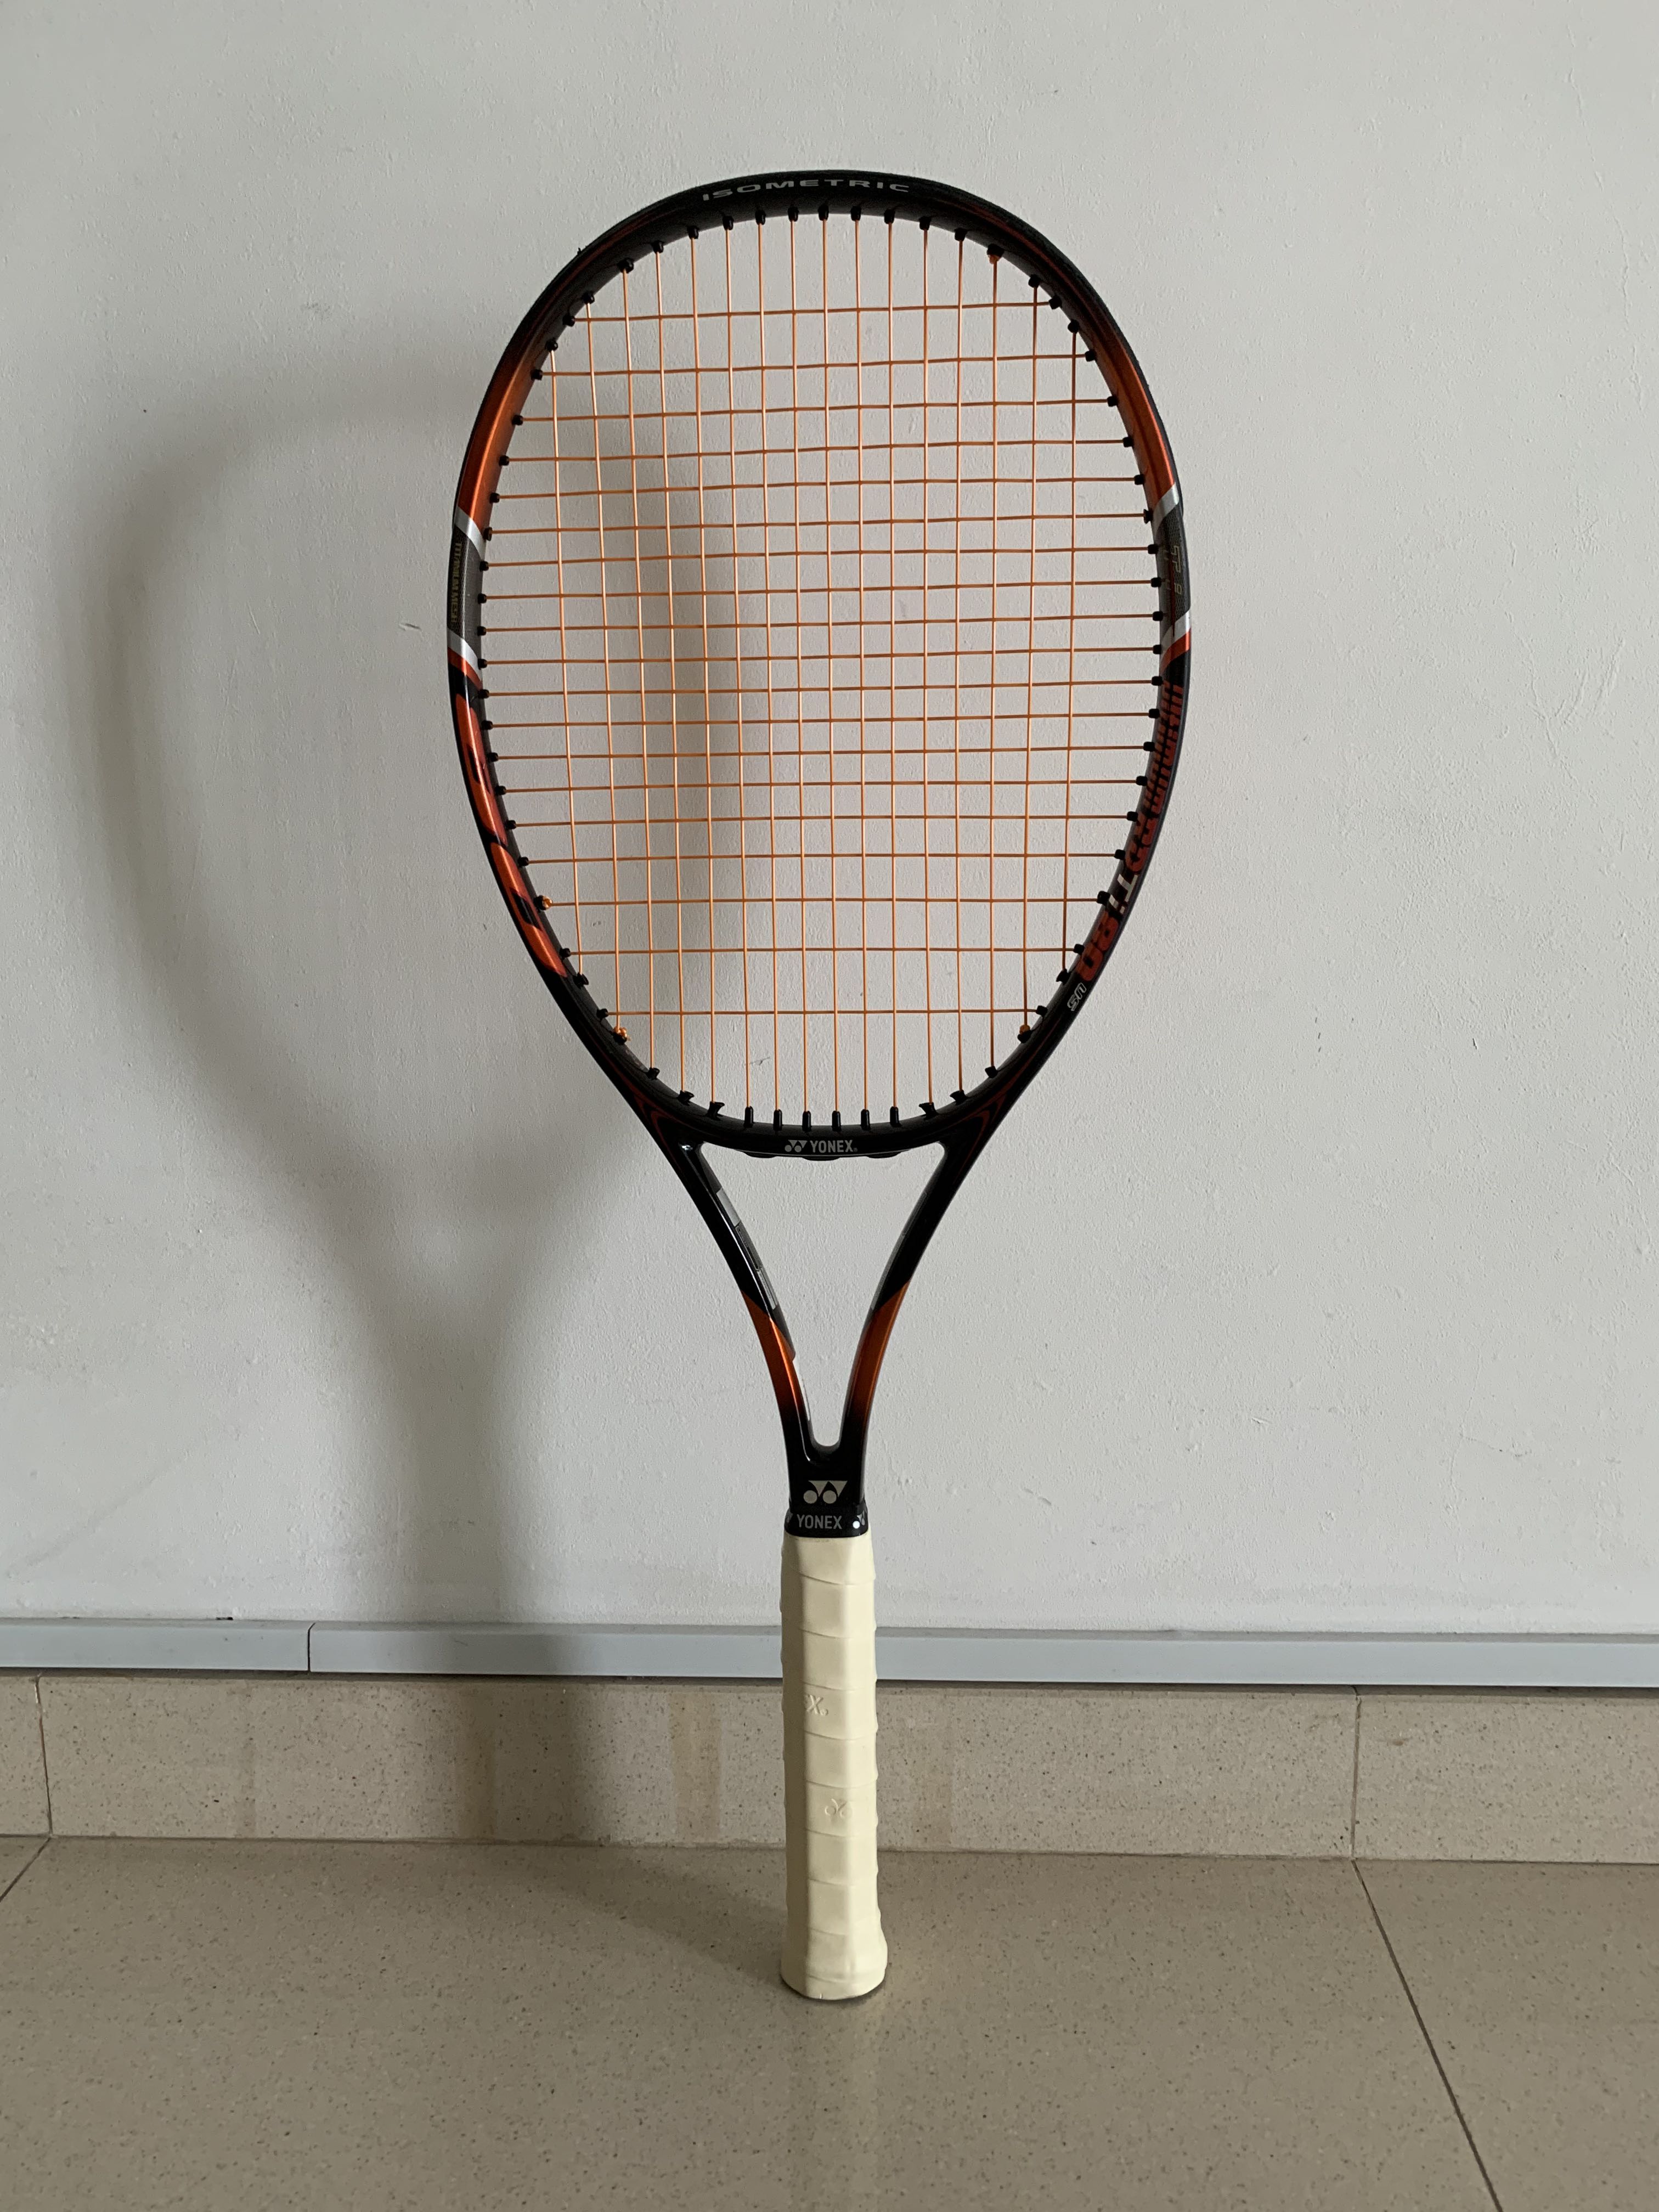 【メリット】YONEX テニスラケット Ultimum ラケット